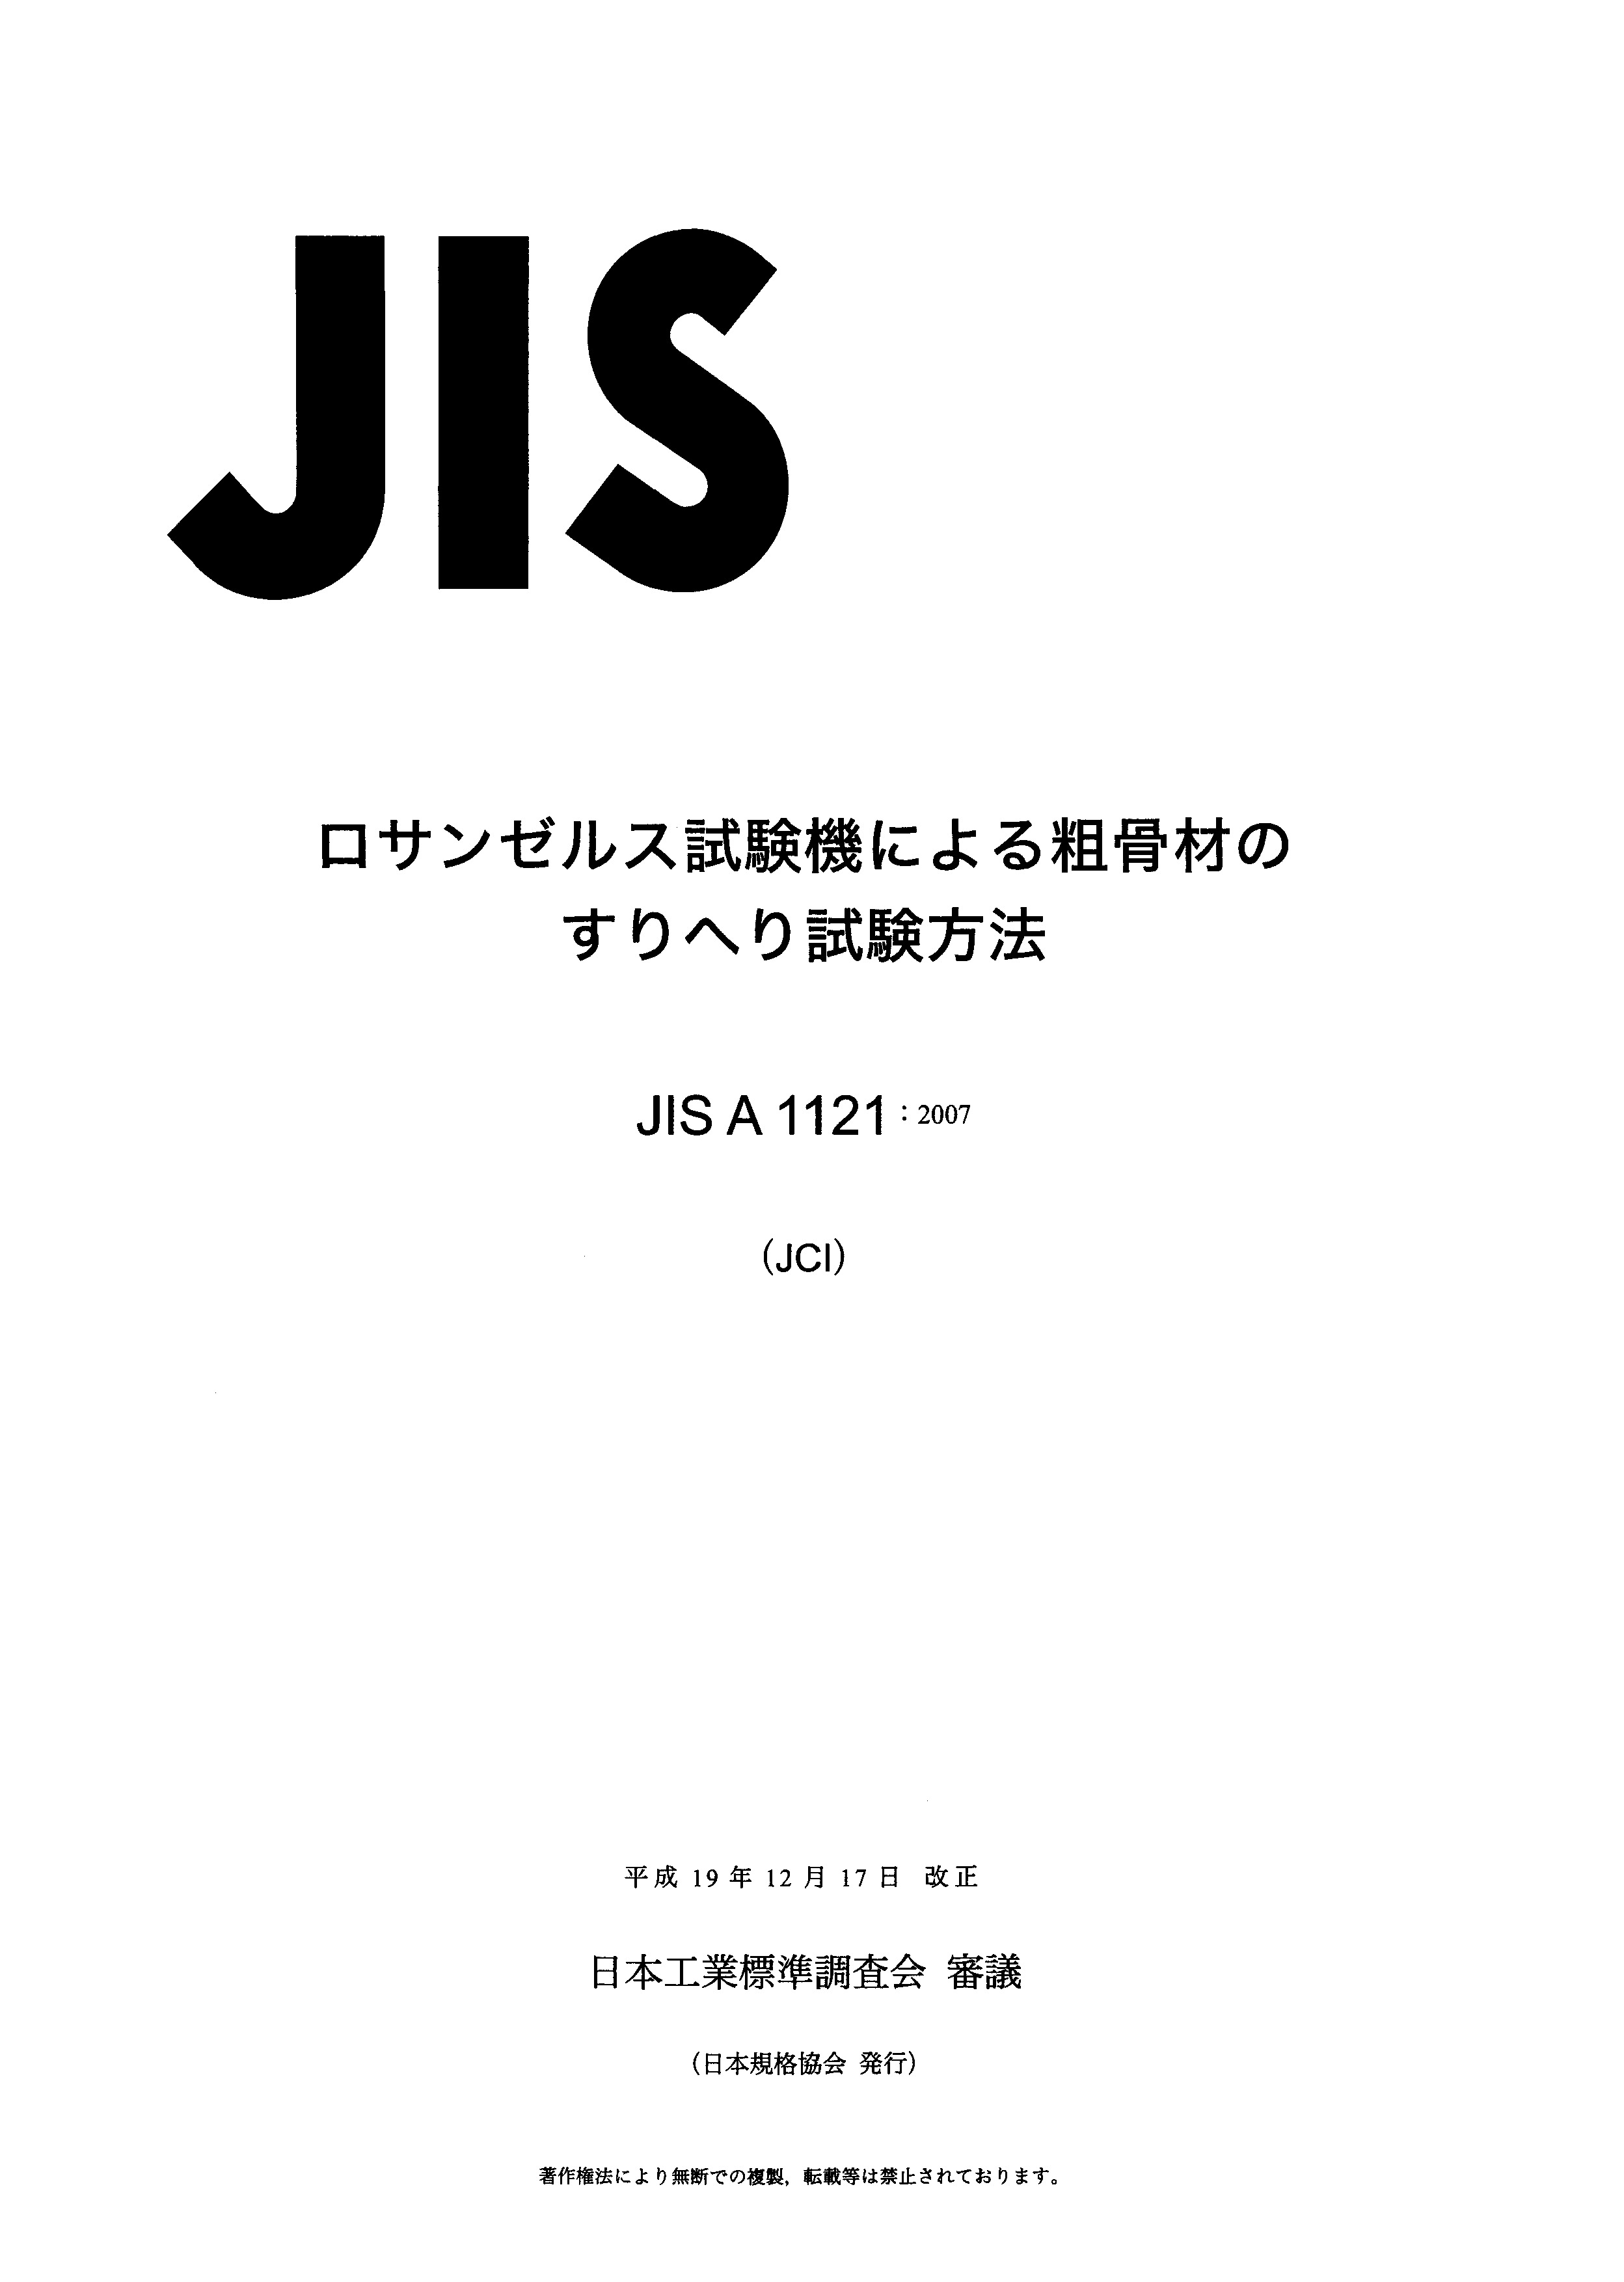 JIS A 1121:2007封面图